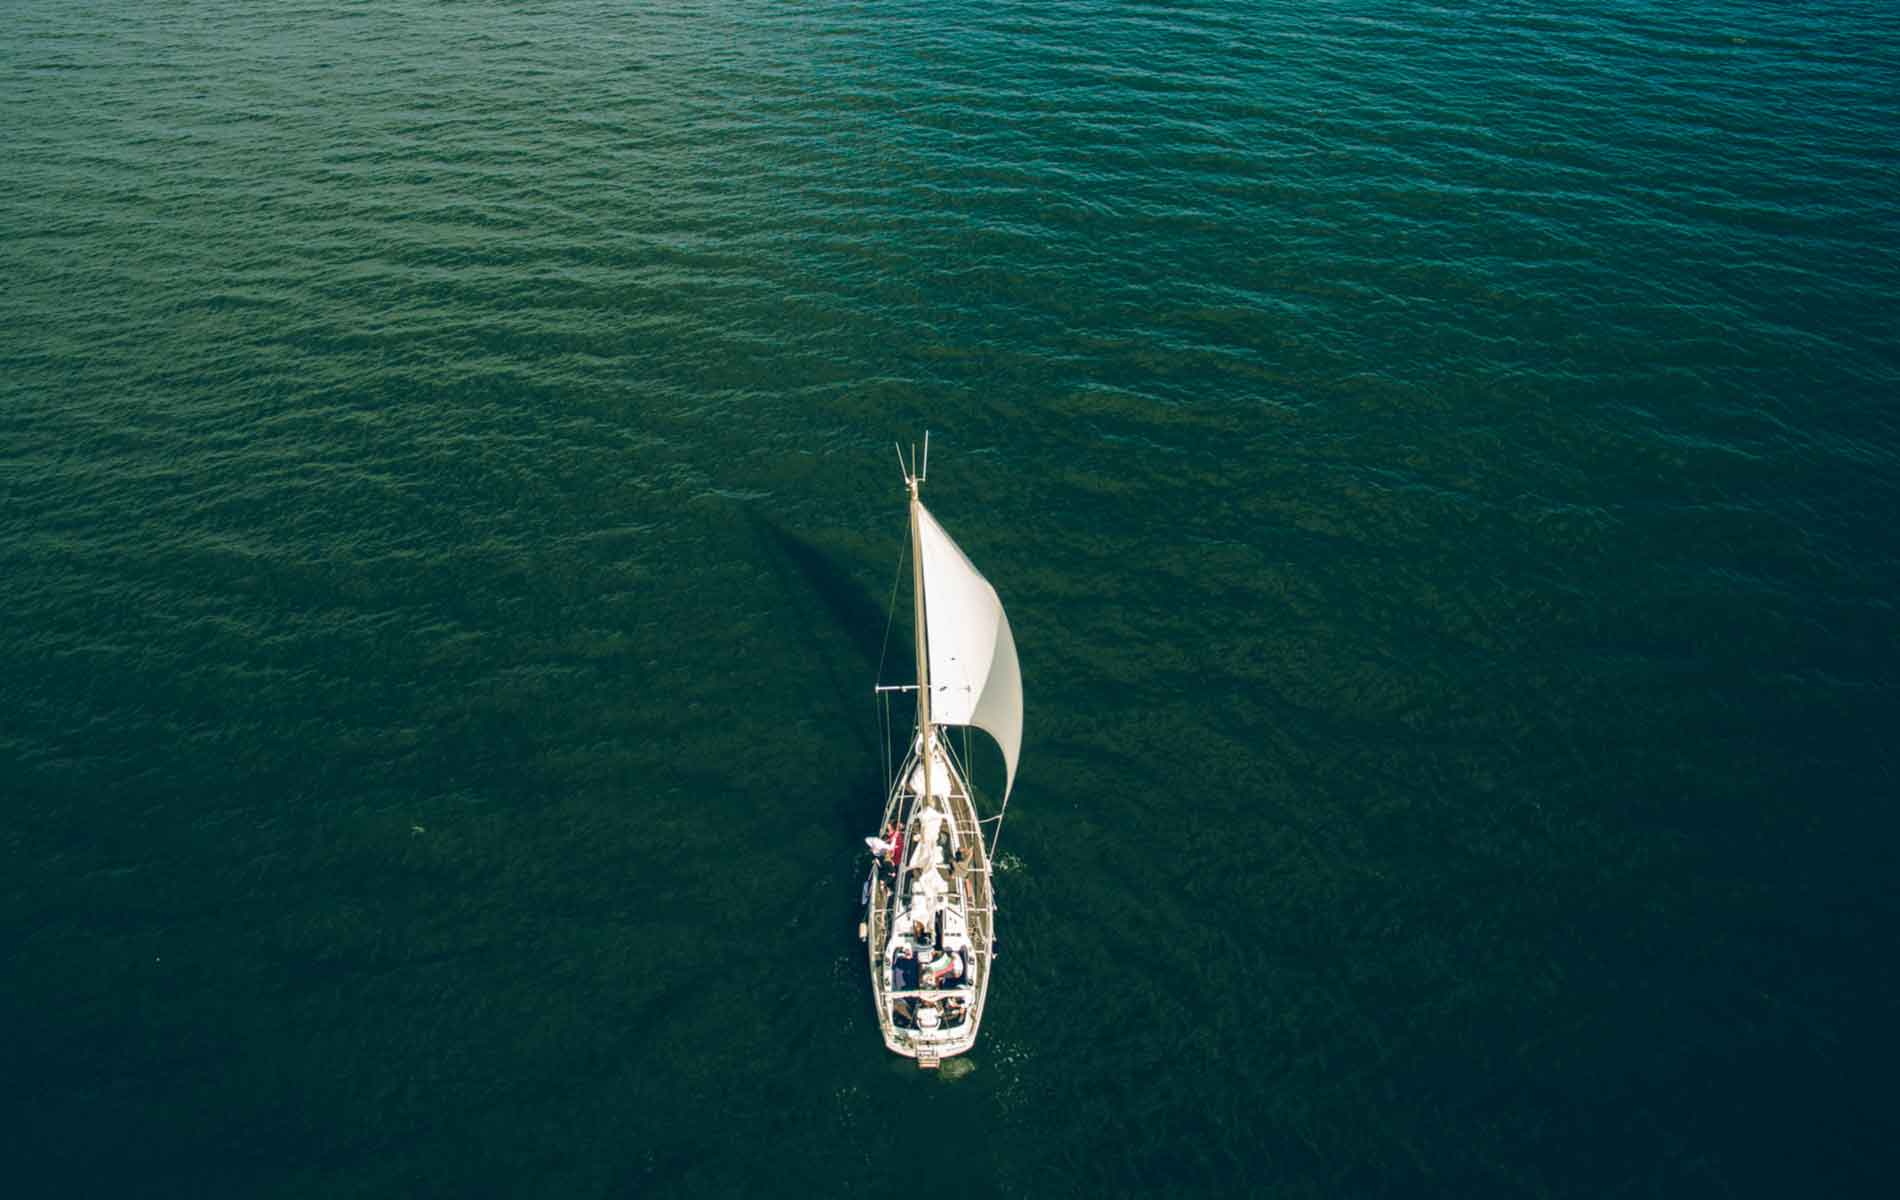 A yacht on the Black Sea